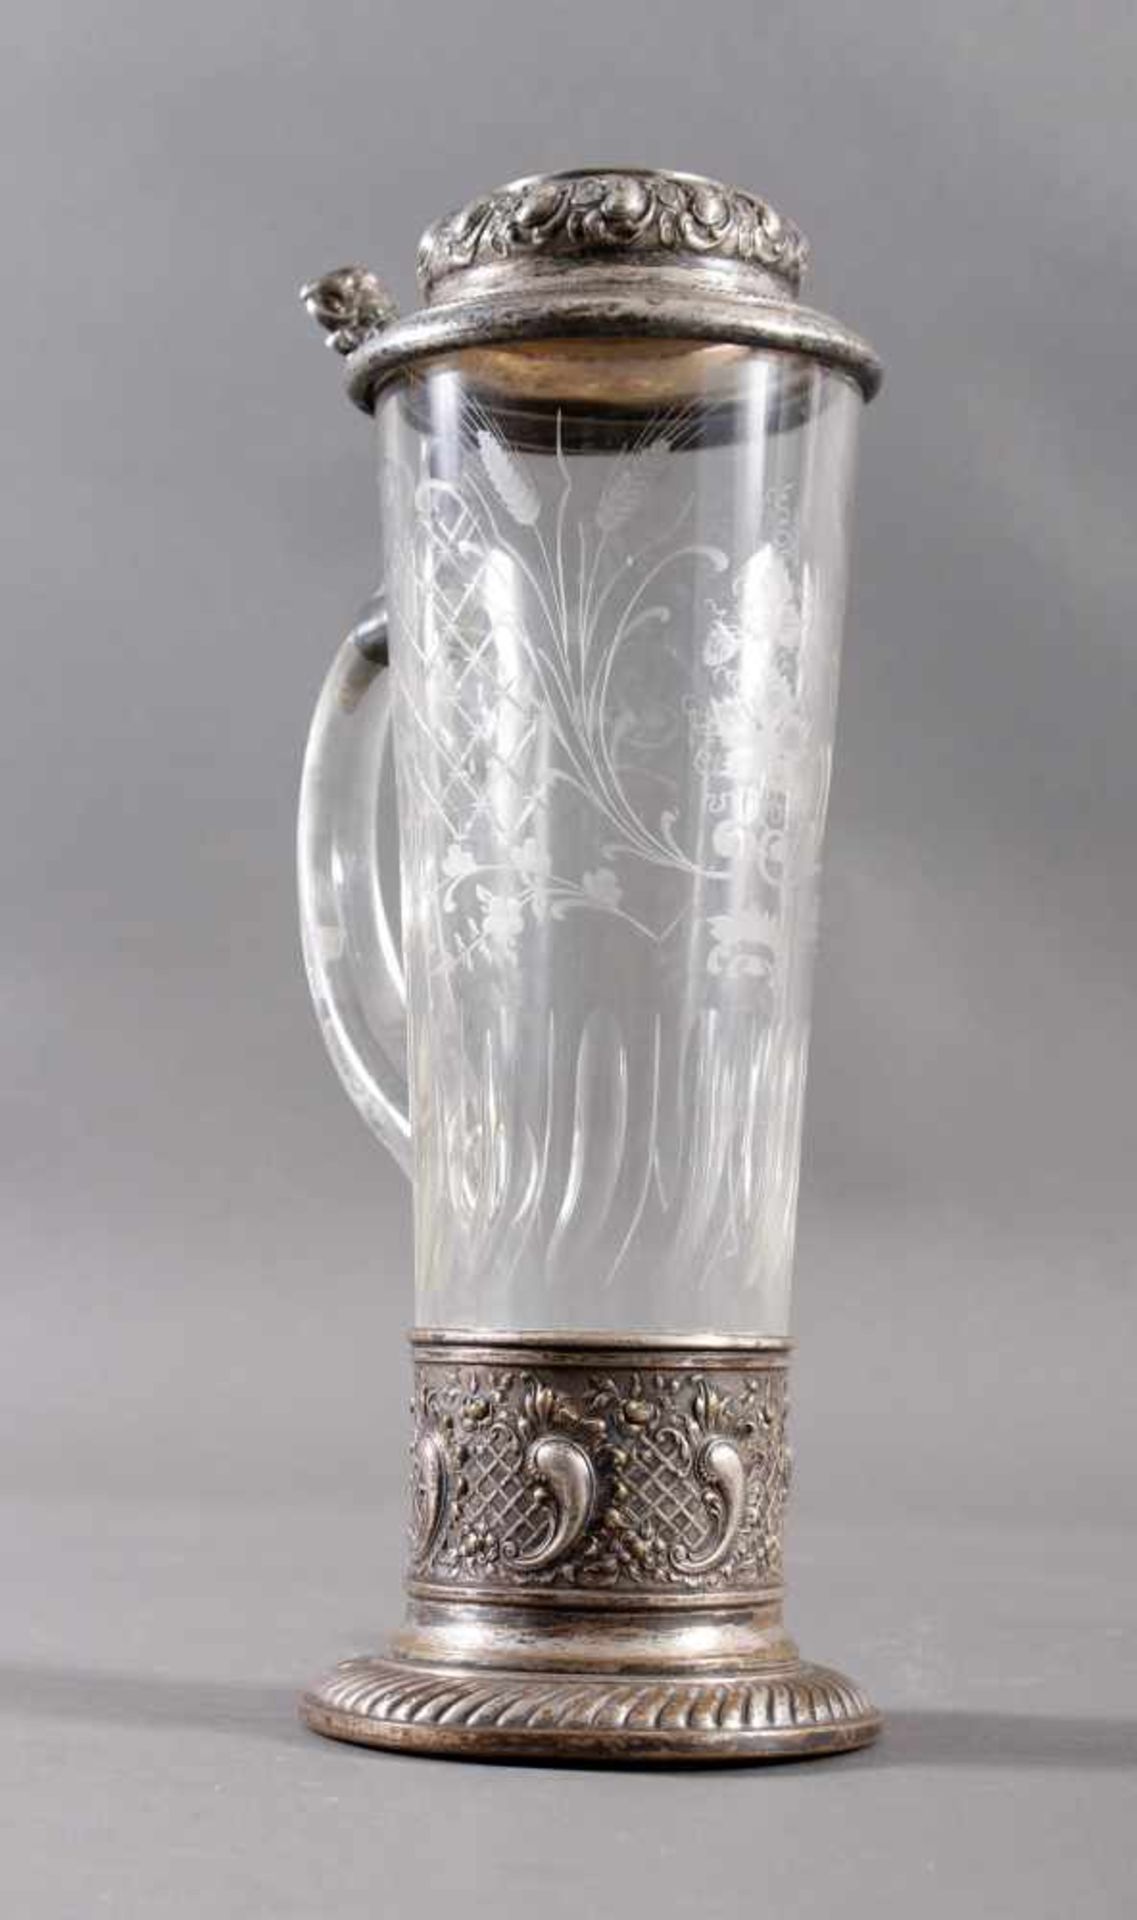 WMF-Historismus Trinkkrug um 1890farbloses konisches Glas  mit  geschliffenem Ranken und - Bild 2 aus 9